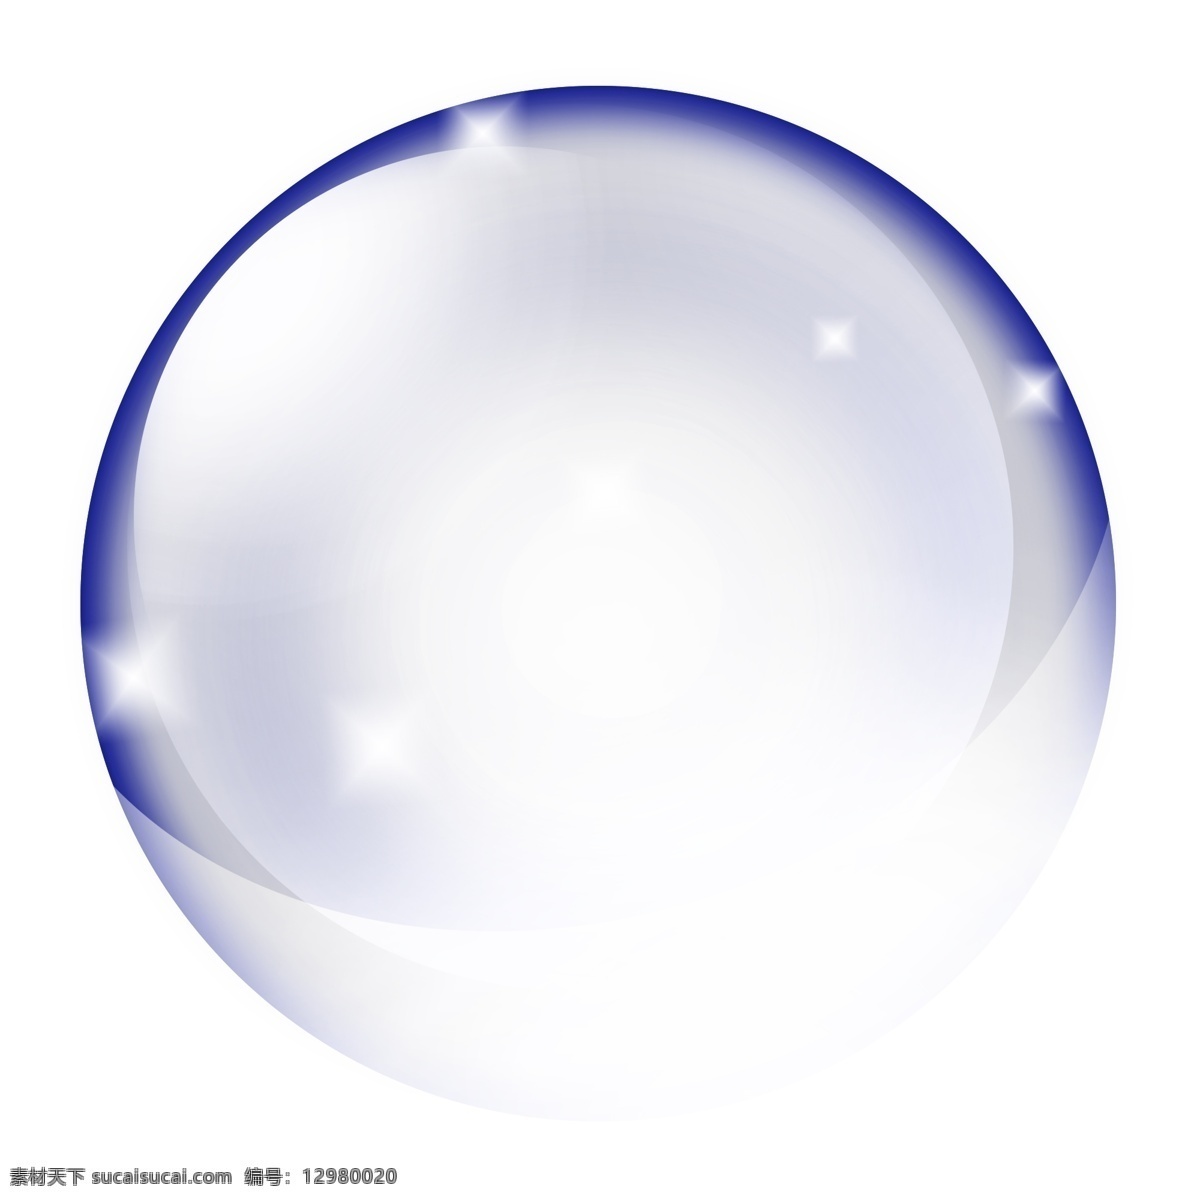 彩色 泡泡 吹 插画 透明气泡 泡沫 弹力气泡 水泡 水晶球 圆球插画 彩色泡泡 吹泡泡 童趣插画